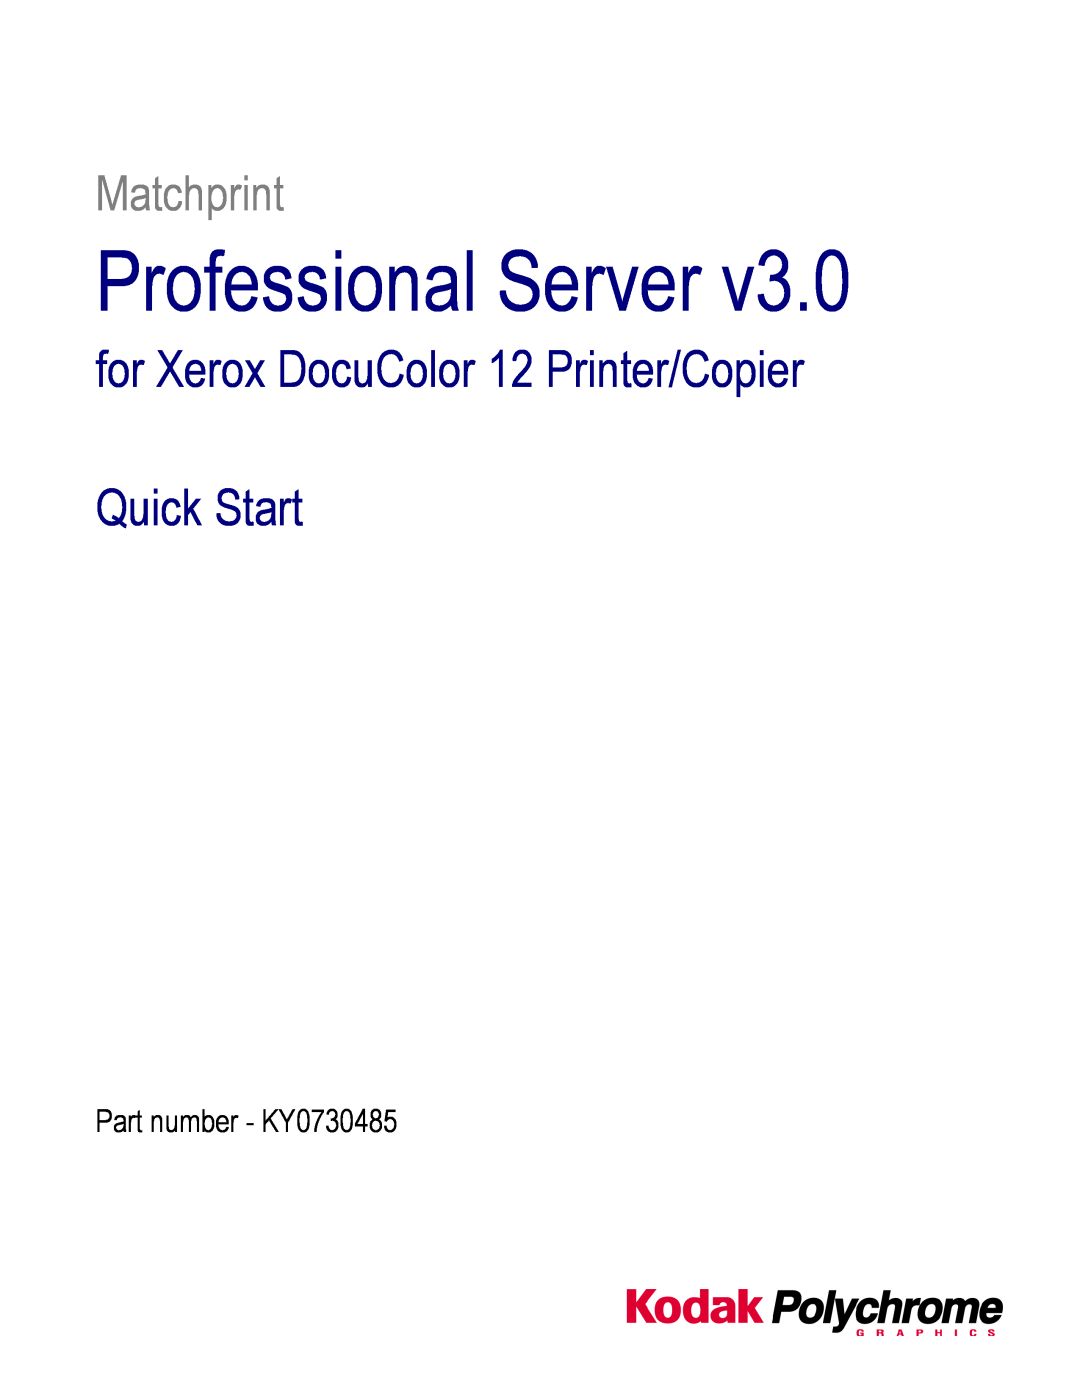 Kodak KY0730485 quick start Professional Server, for Xerox DocuColor 12 Printer/Copier Quick Start, Matchprint 